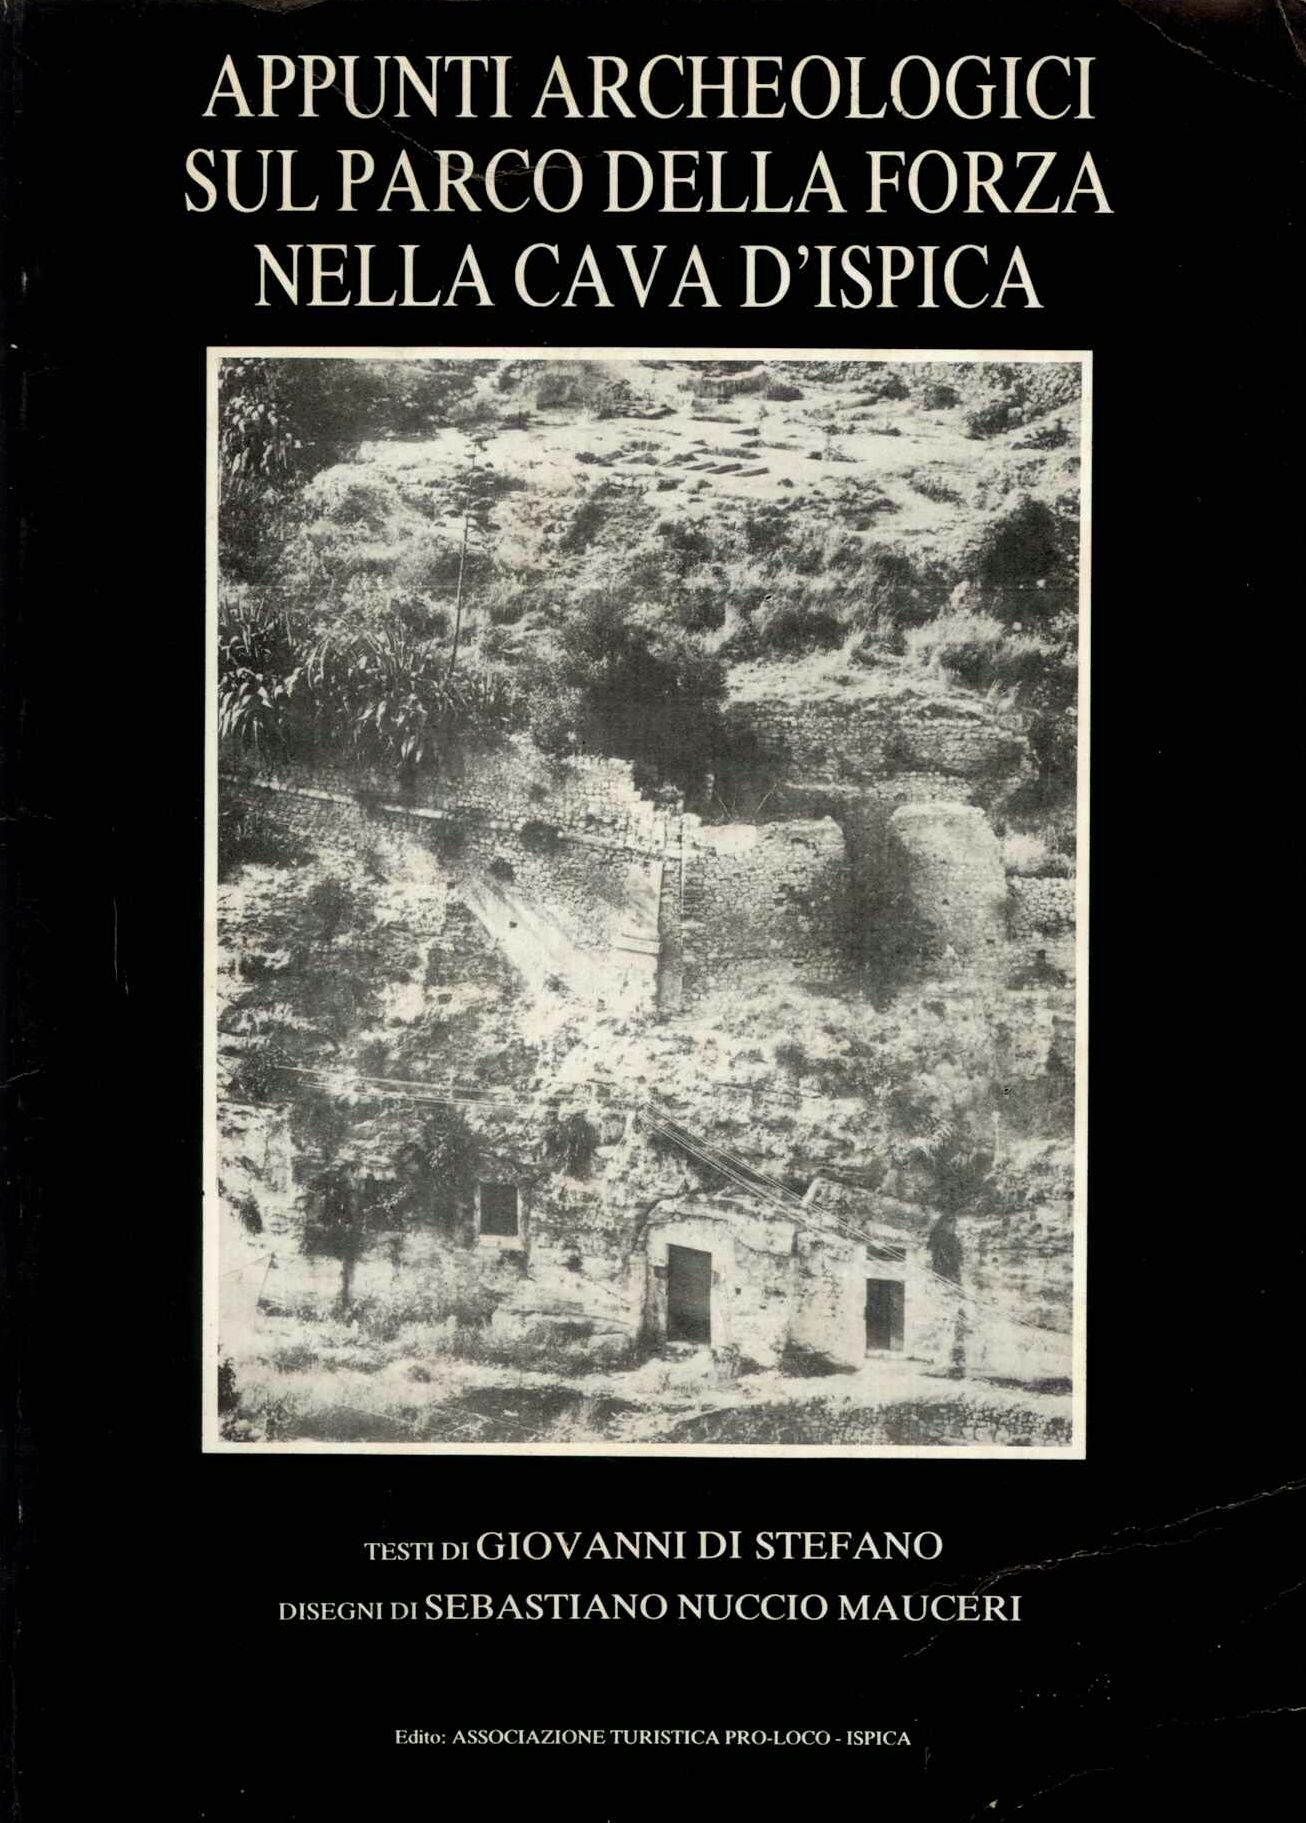 Appunti Archeologici sul Parco Della Forza nella cava d'Ispica